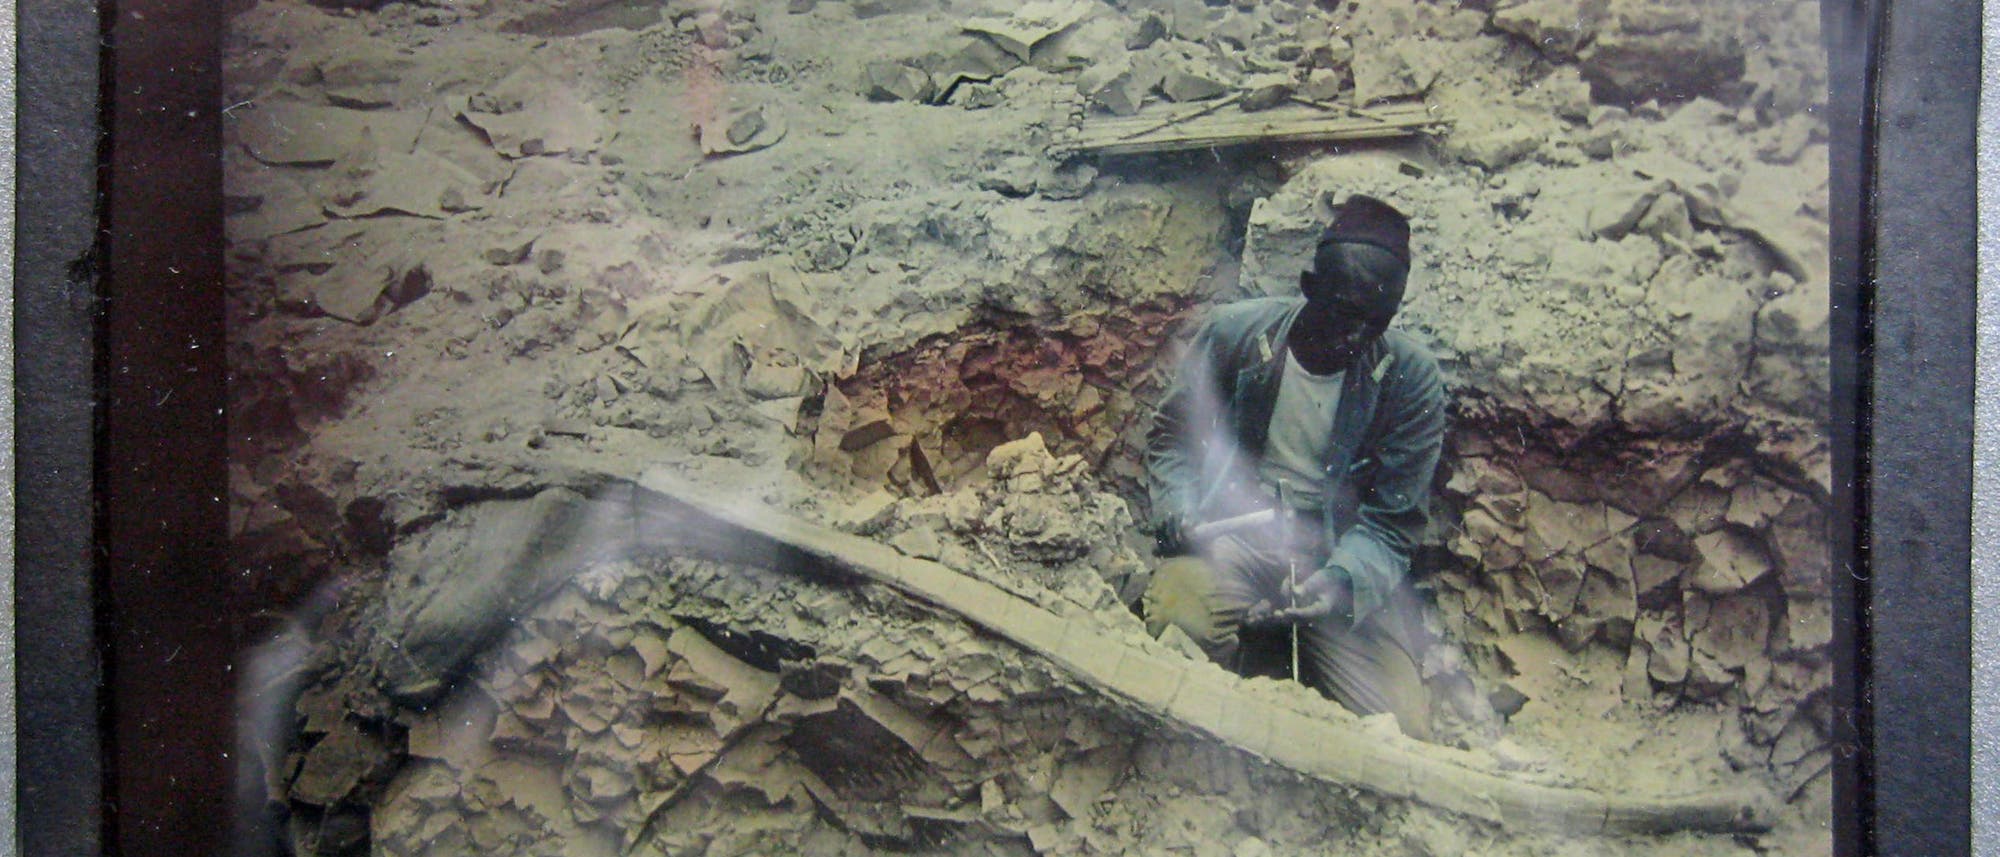 Fossiliengrabung am Tendaguru zwischen 1909 und 1913. Der Text auf dem Diapositiv lautet: »Oberaufseher präpariert große Rippe.«